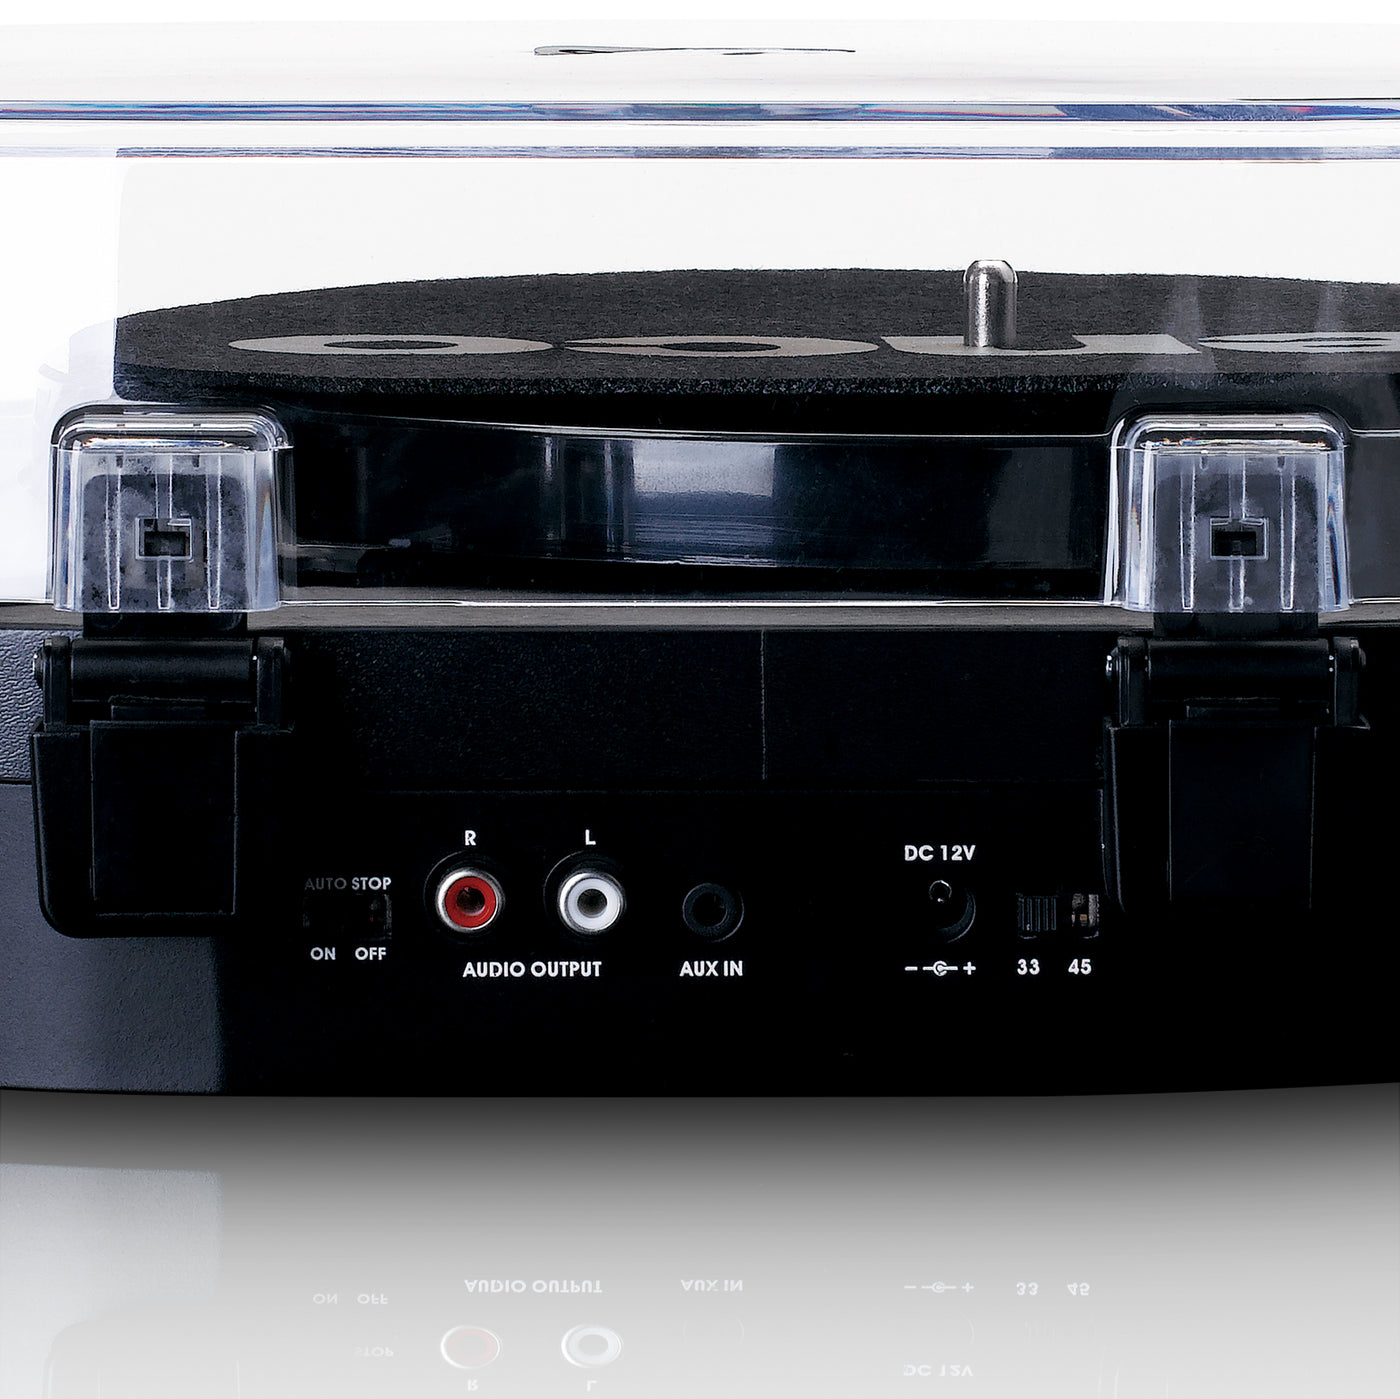 LENCO LS-40BK - Platenspeler met ingebouwde speakers - Zwart